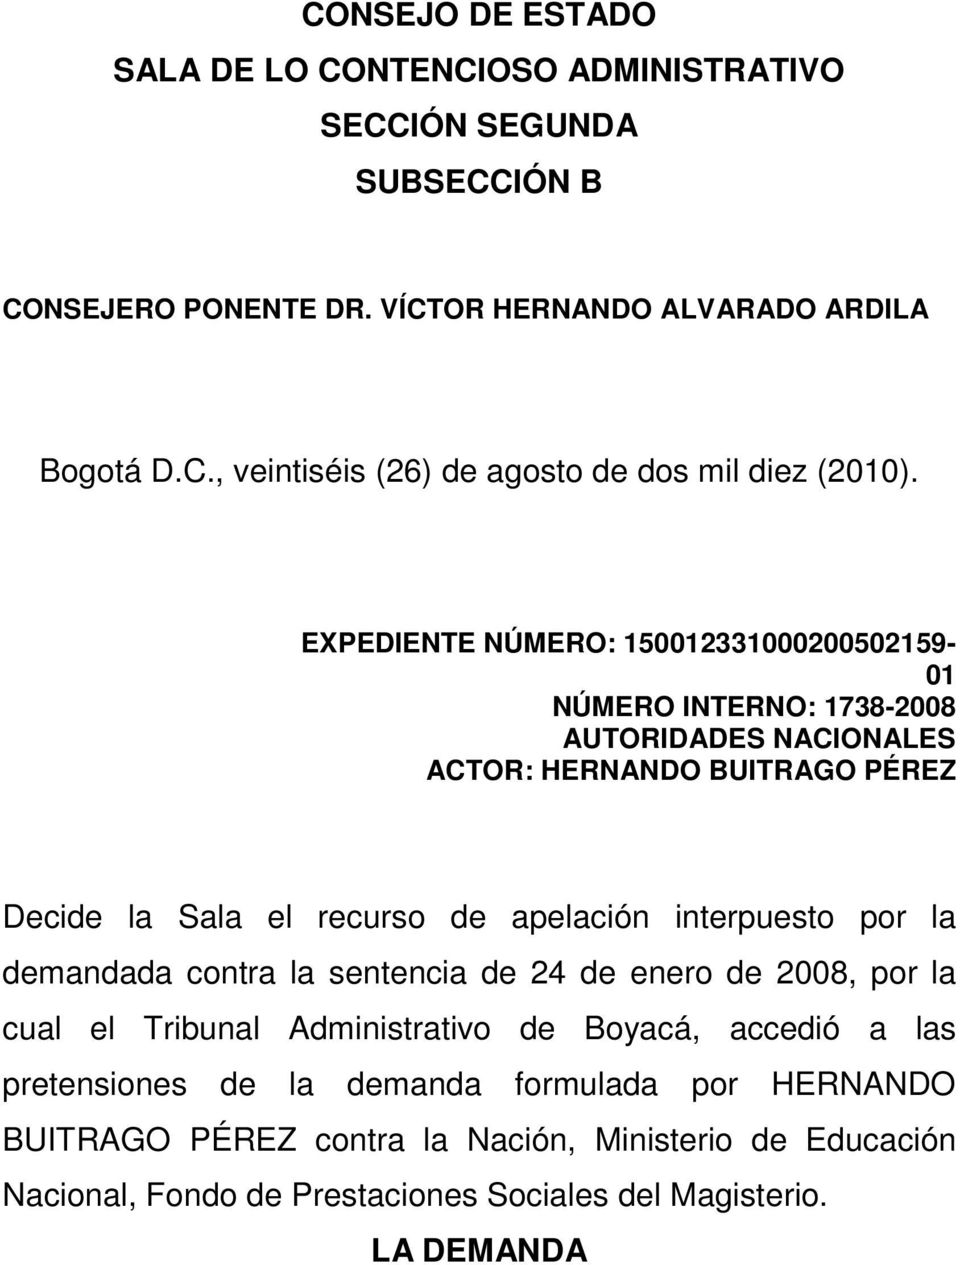 interpuesto por la demandada contra la sentencia de 24 de enero de 2008, por la cual el Tribunal Administrativo de Boyacá, accedió a las pretensiones de la demanda